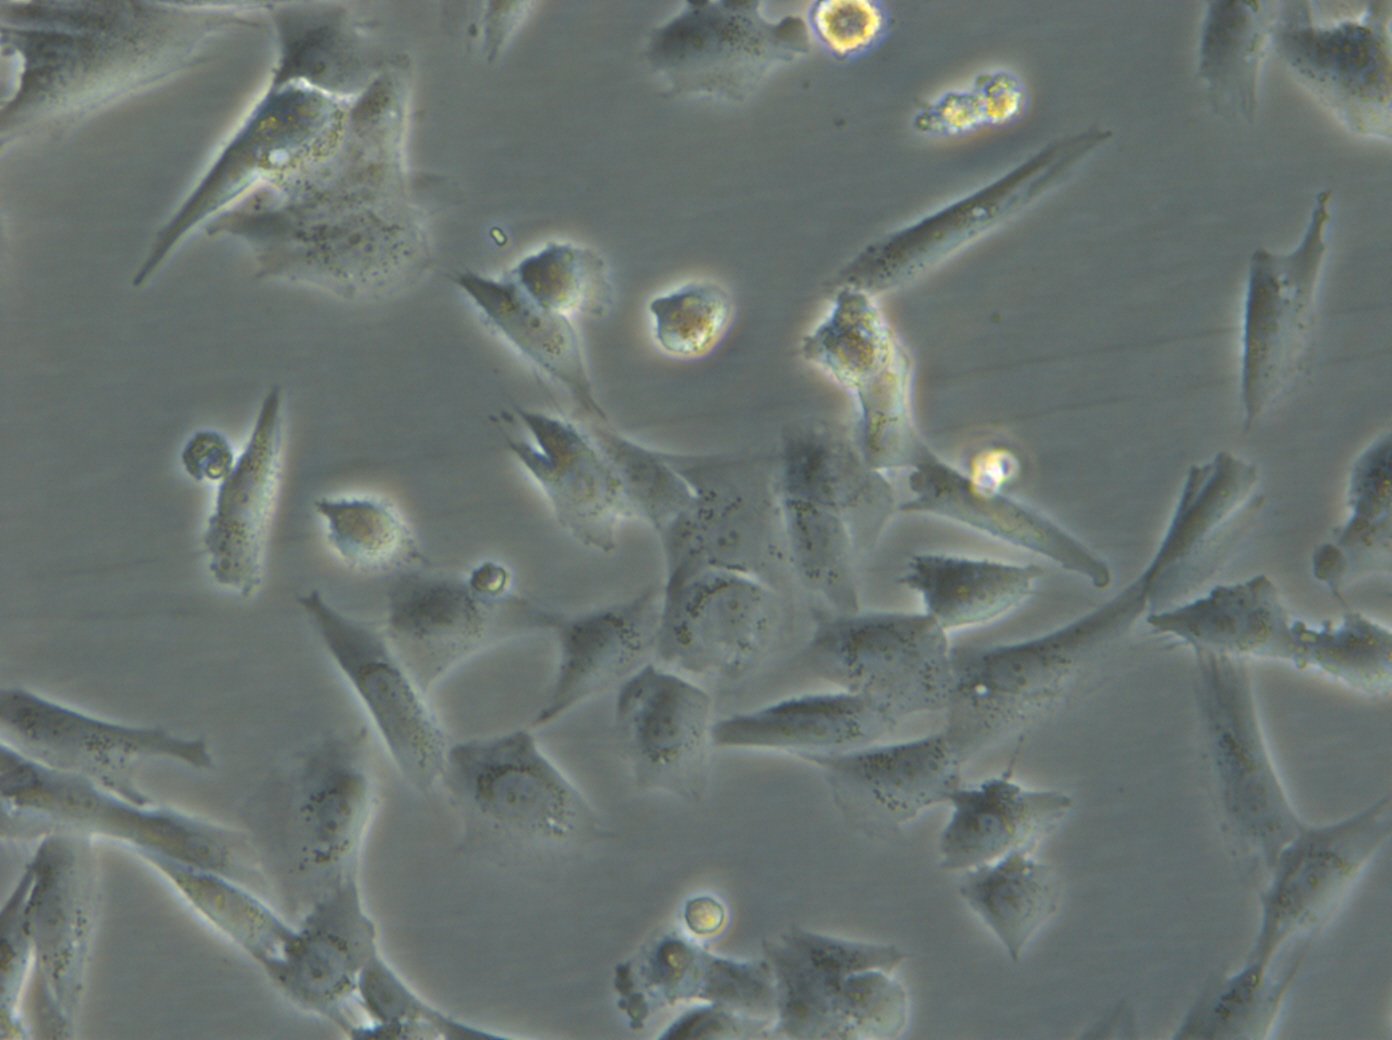 HROG63 Cells